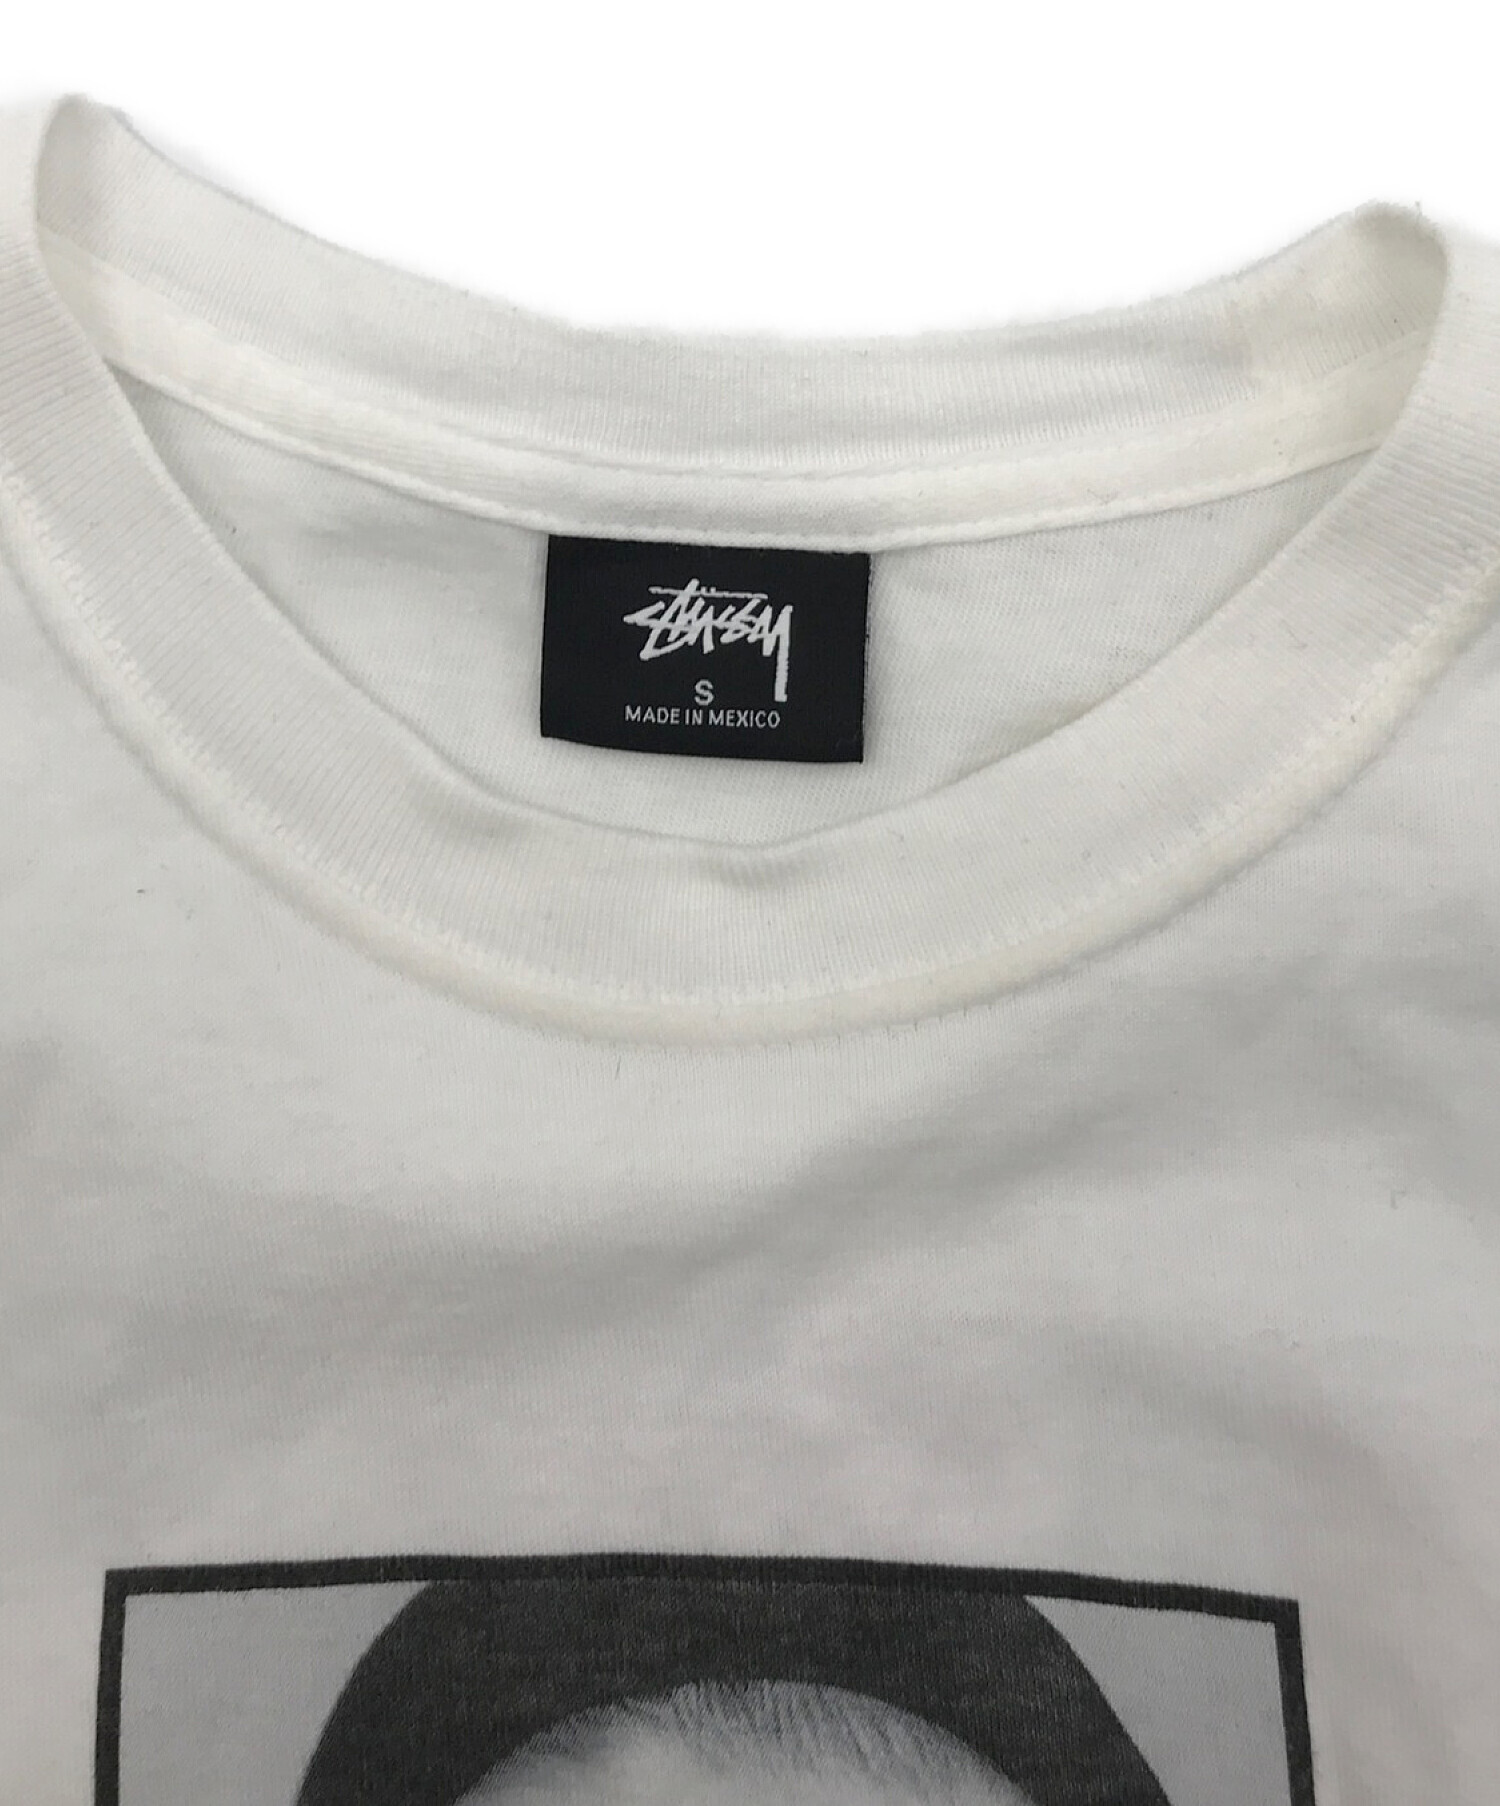 stussy (ステューシー) カール ラガーフェルド追悼 CHANELプリントTシャツ ホワイト サイズ:S